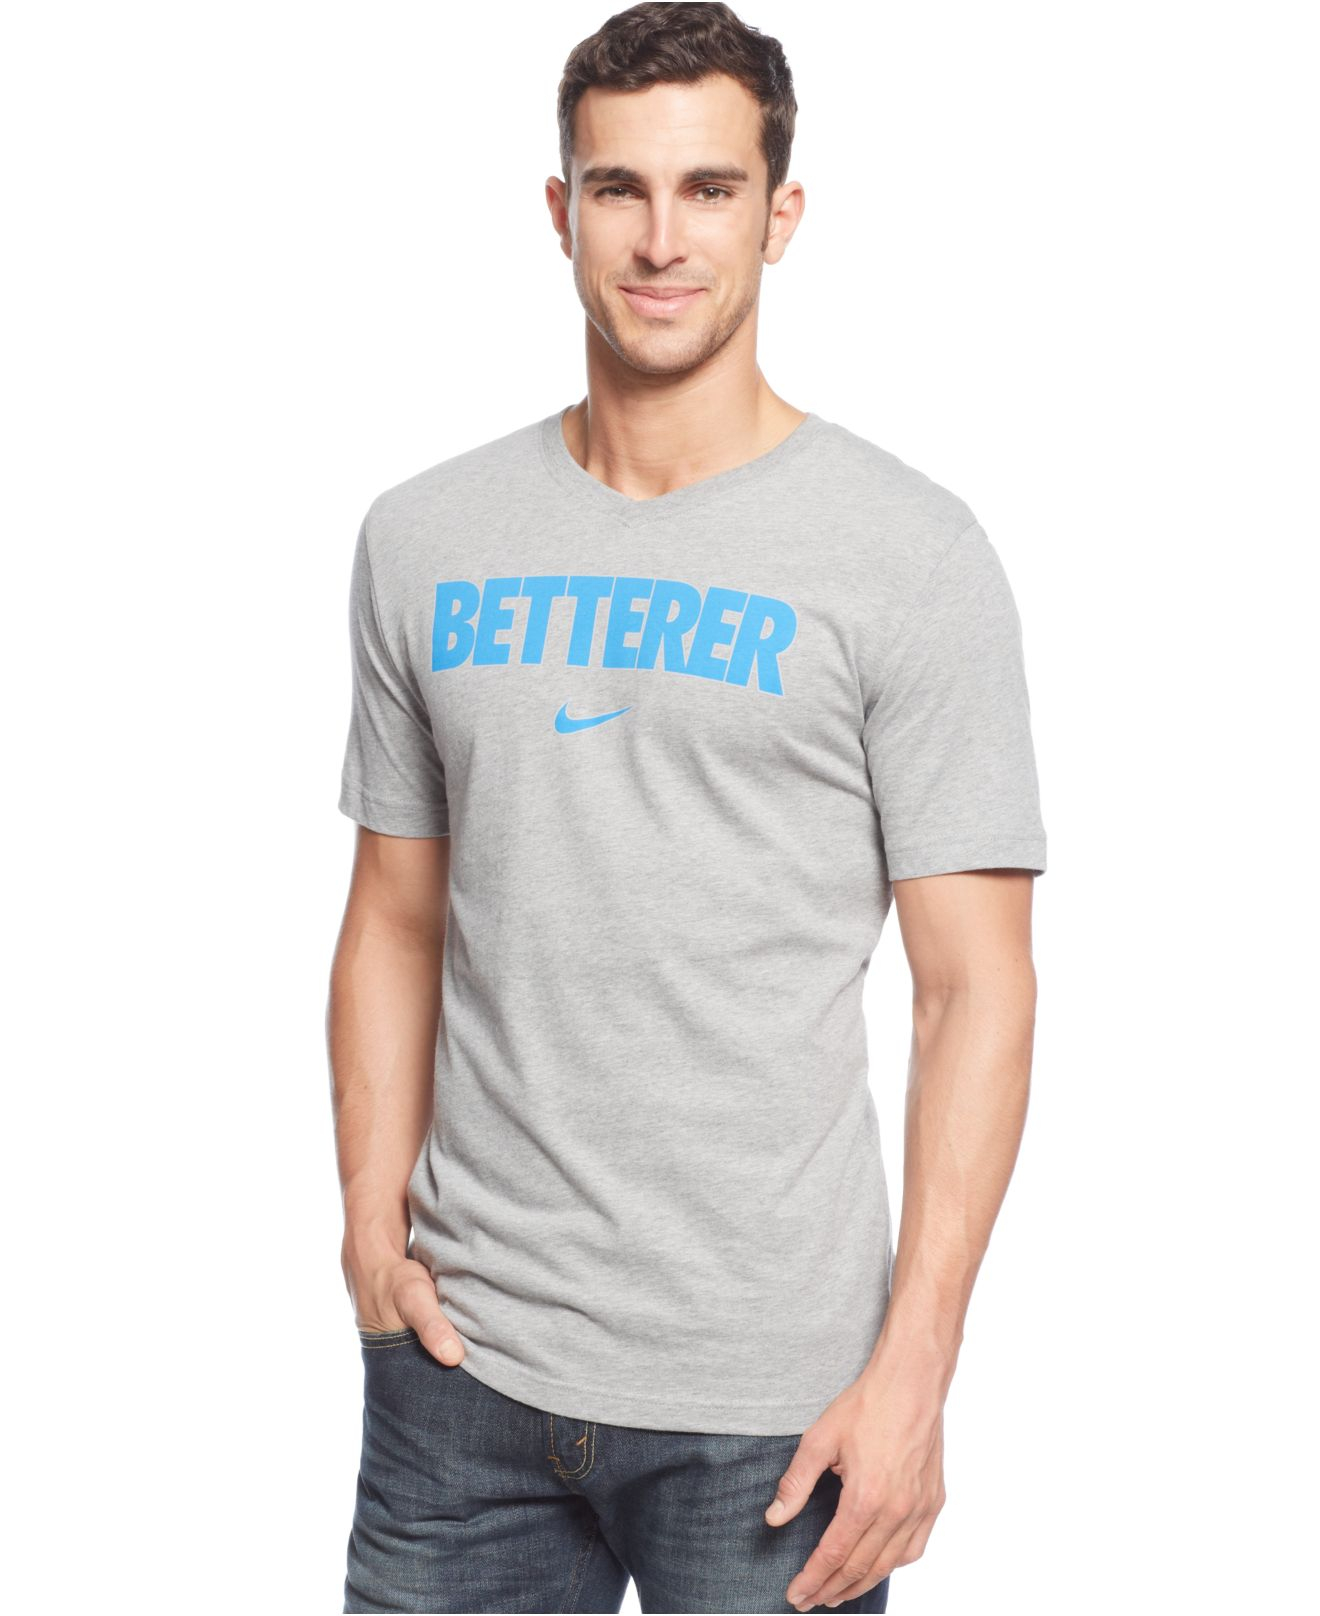 Lyst - Nike Roger Federer Betterer V-Neck T-Shirt in Gray for Men